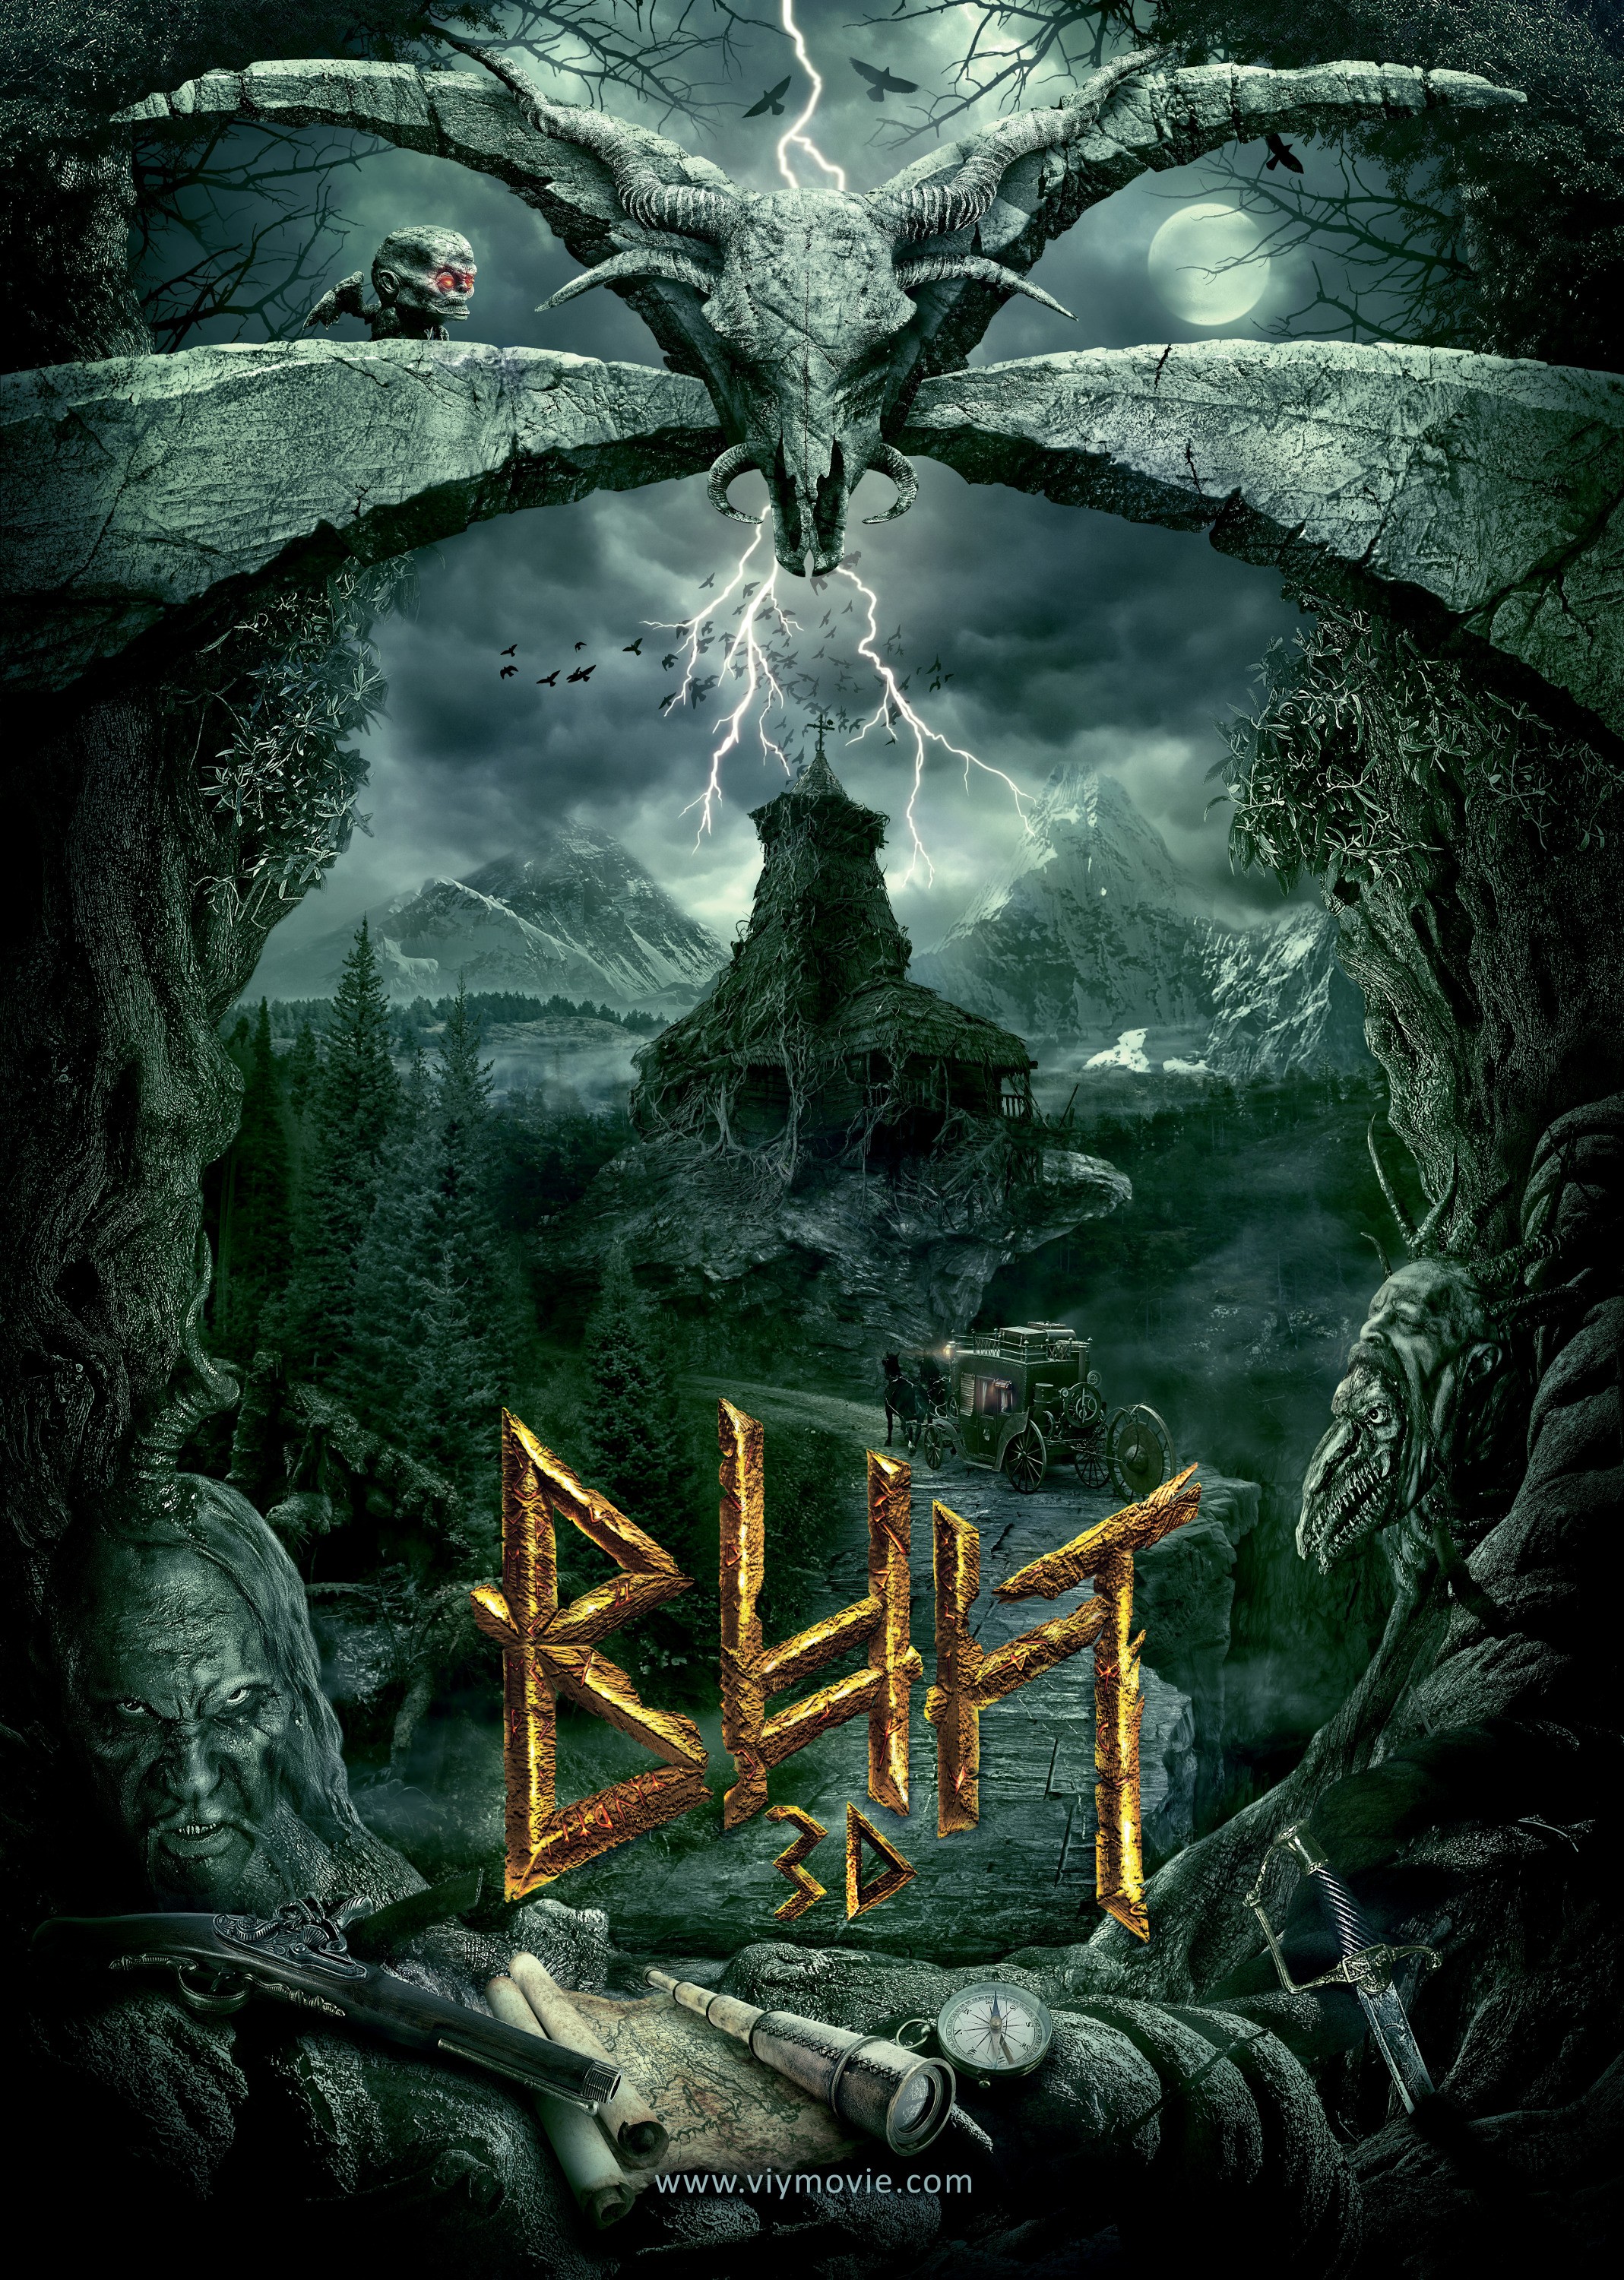 Mega Sized Movie Poster Image for Viy. Vozvrashchenie 